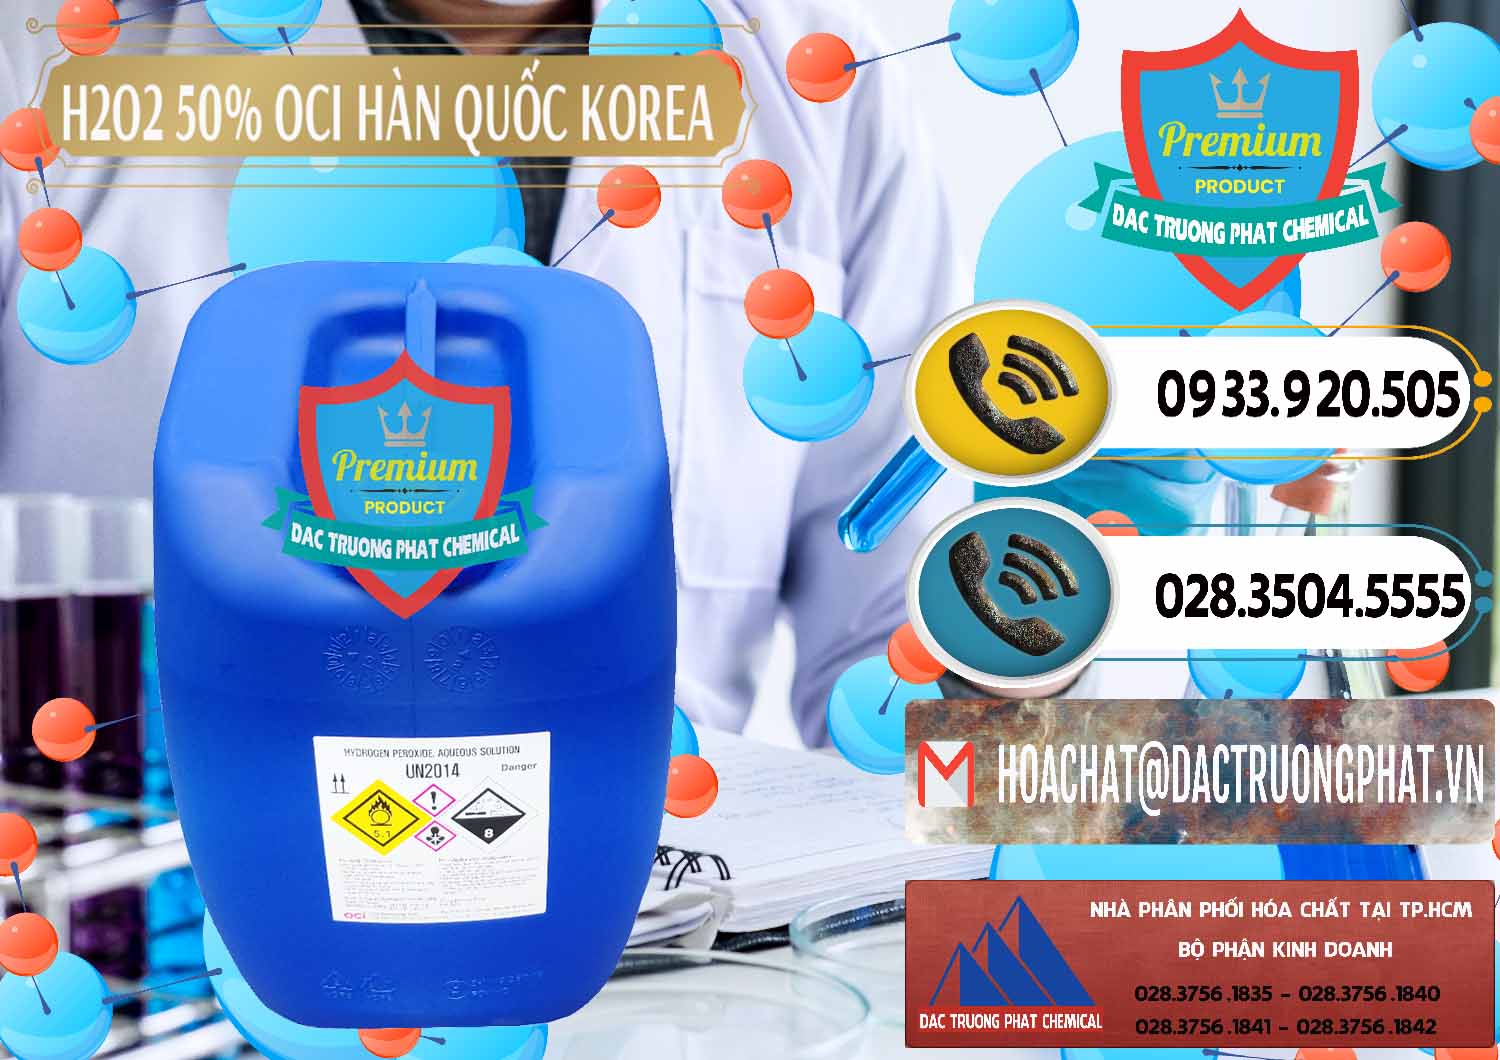 Công ty bán - phân phối H2O2 - Hydrogen Peroxide 50% OCI Hàn Quốc Korea - 0075 - Nơi cung cấp và bán hóa chất tại TP.HCM - hoachatdetnhuom.vn